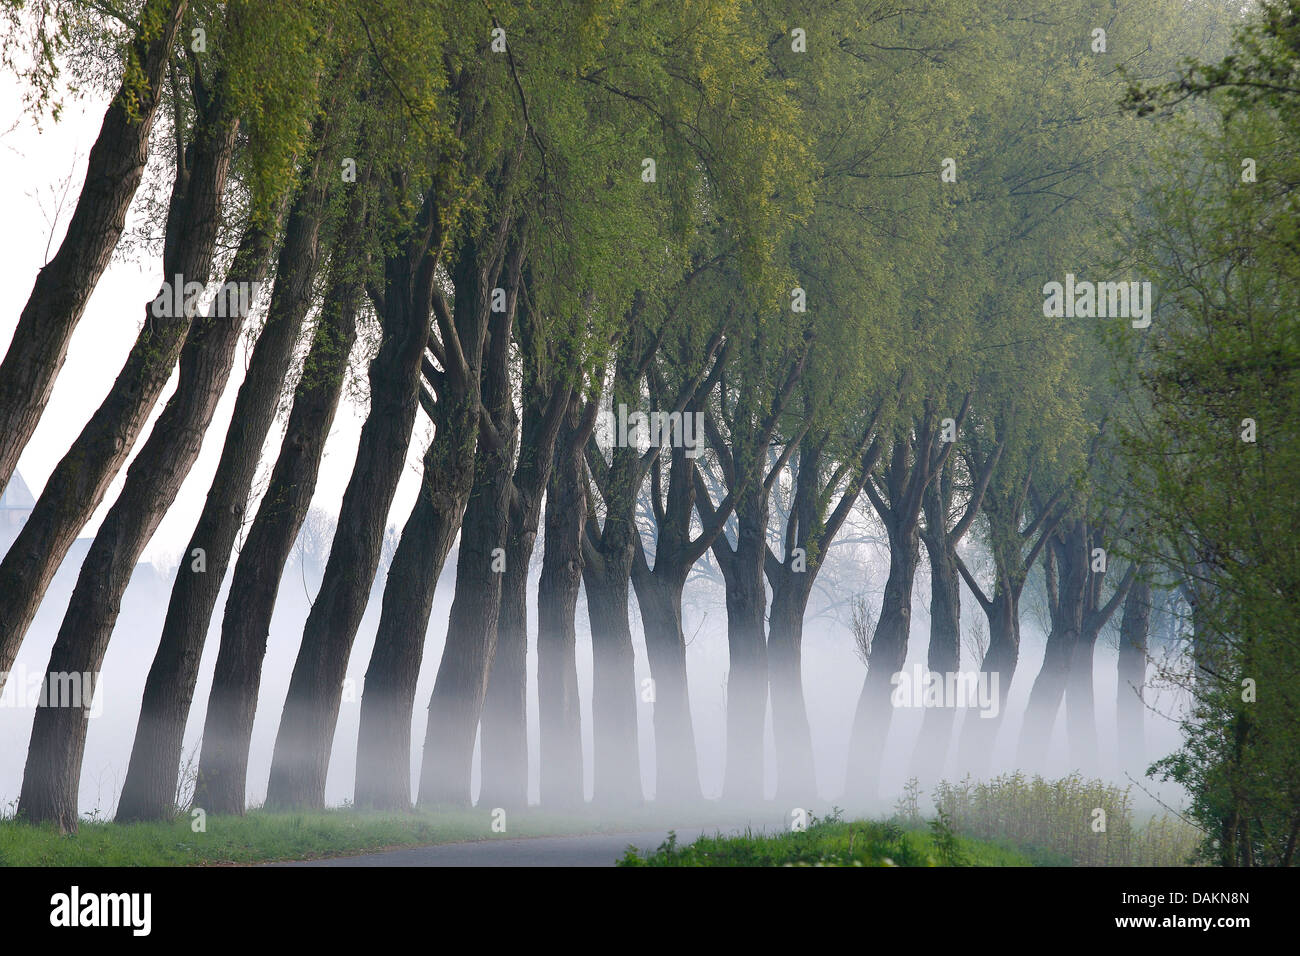 Mimbre, sauce (Salix spec.), hilera de árboles en una carretera en la niebla de la mañana, Bélgica Foto de stock